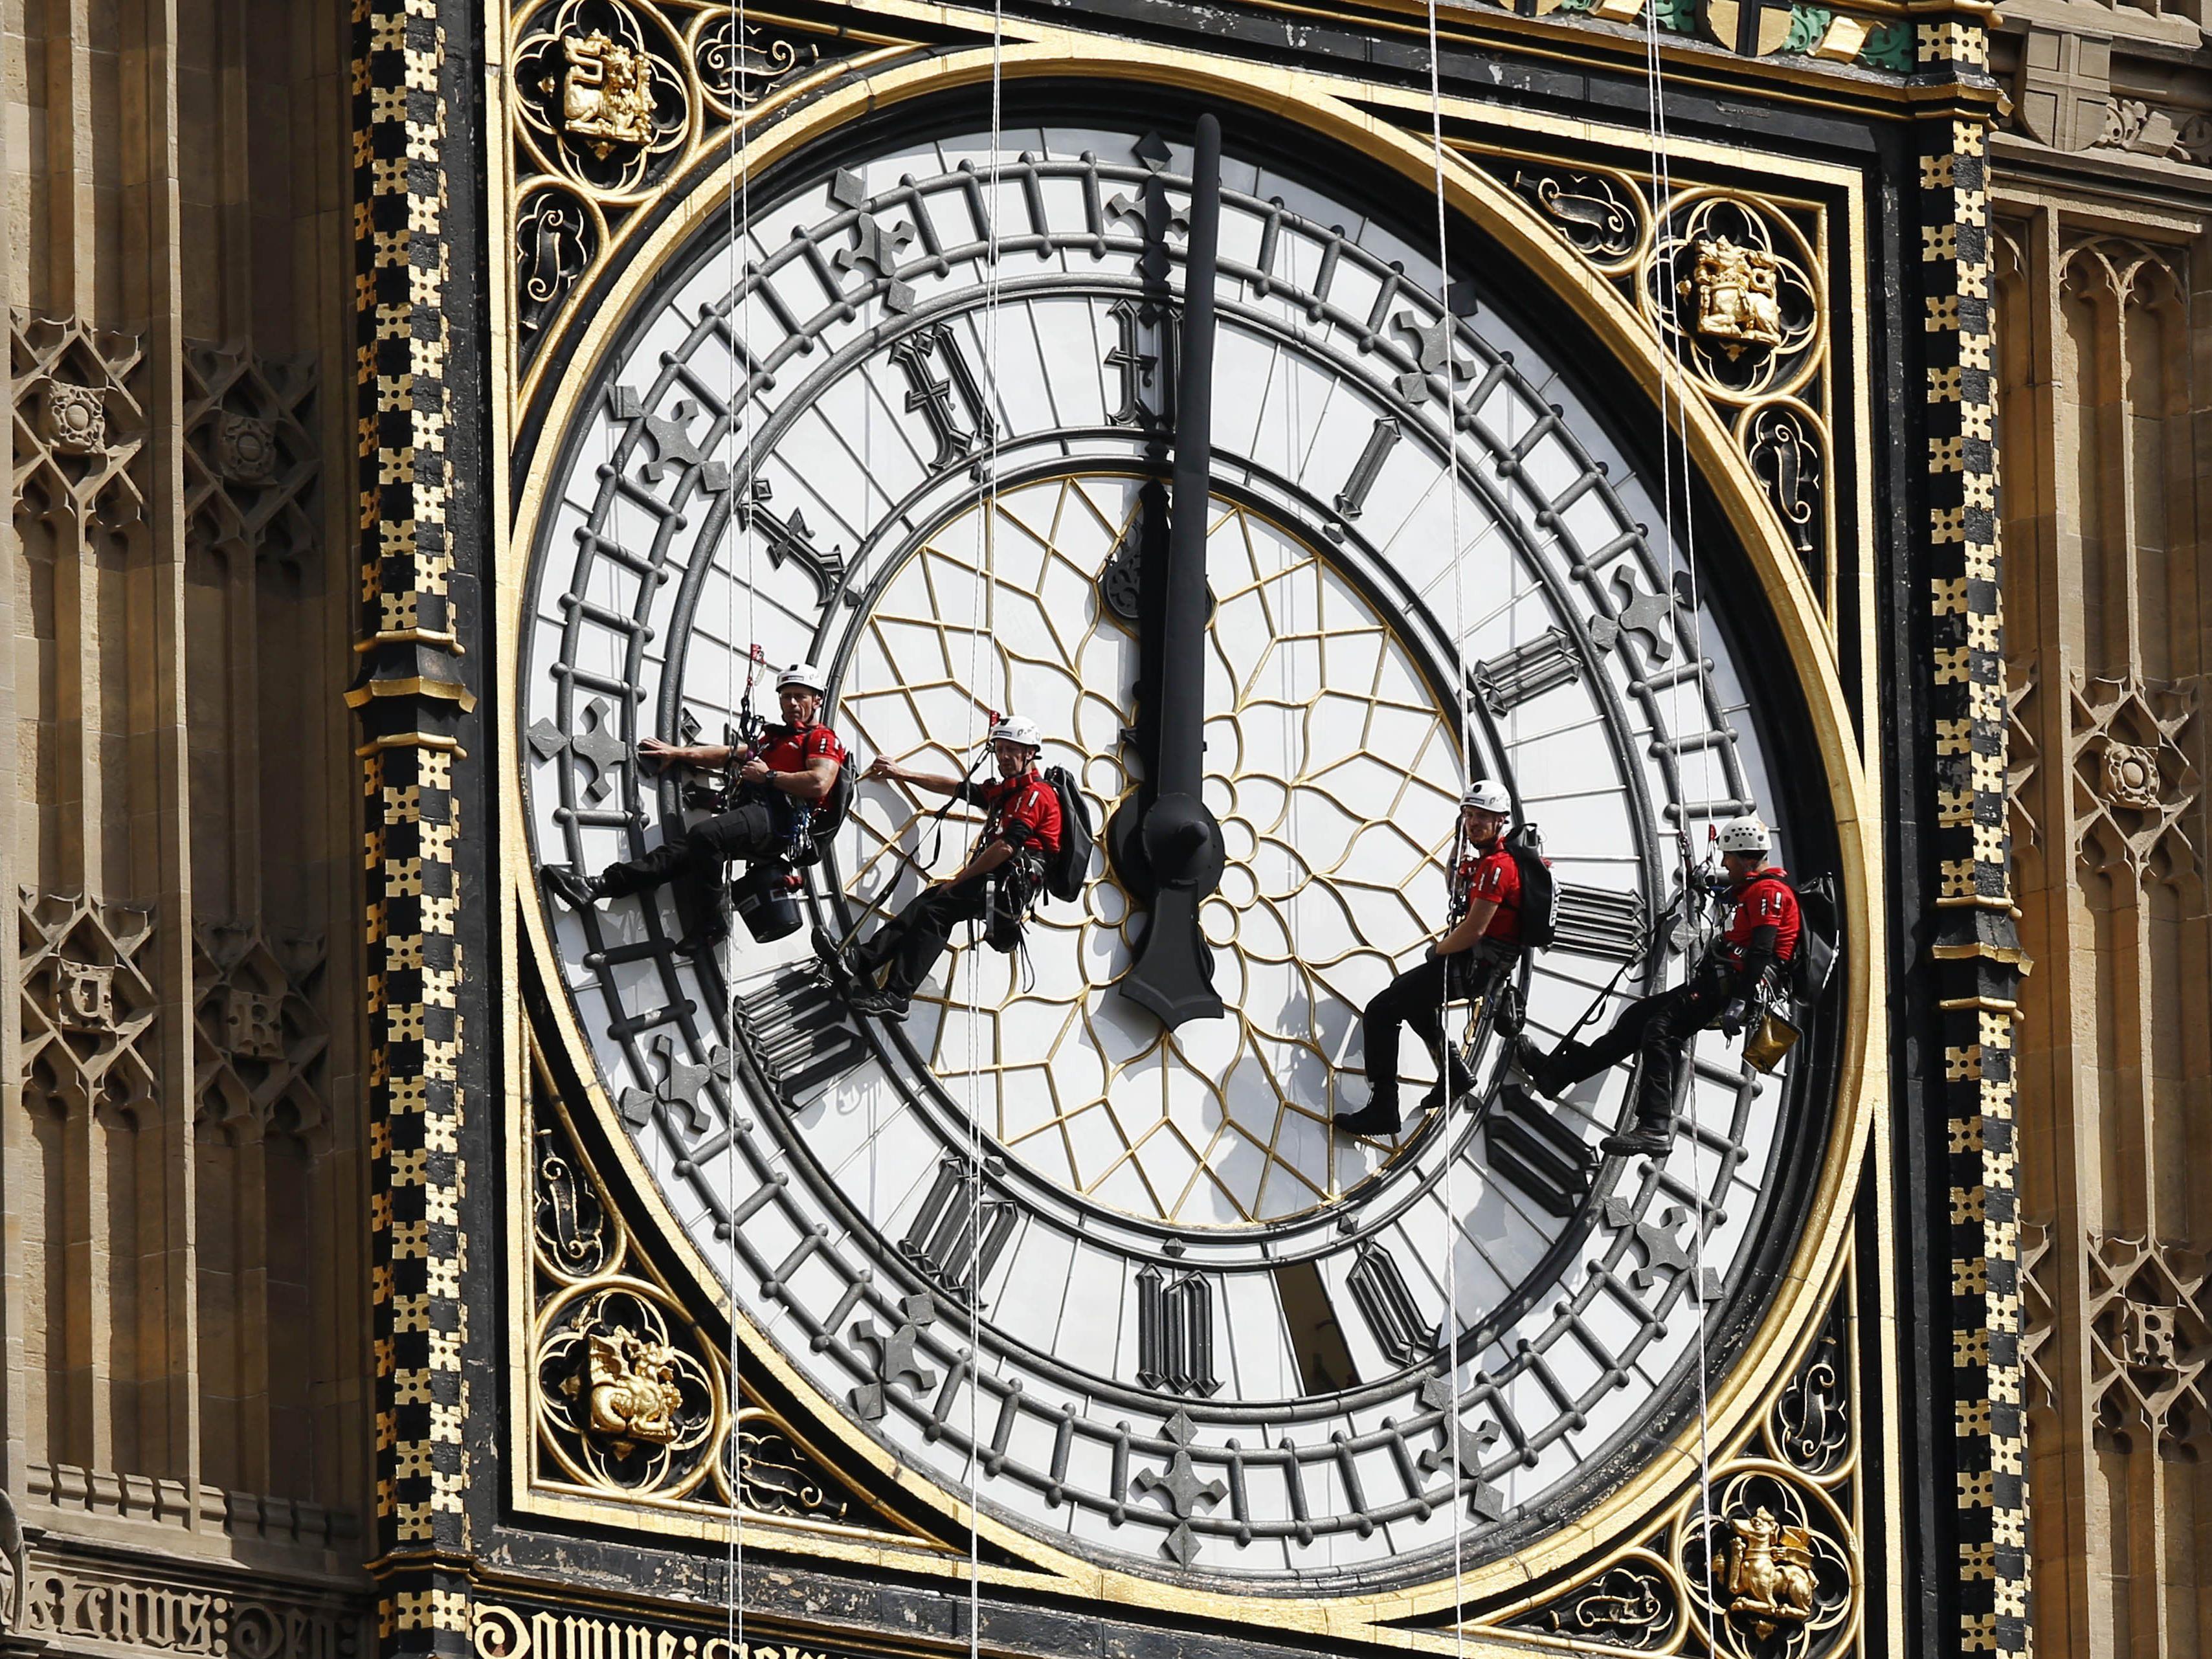 Время в лондоне и москве. Лондон Биг Бен 1859. Биг-Бен (башня Елизаветы). Часы Биг Бен в Лондоне. Часы Биг Бен 1859.